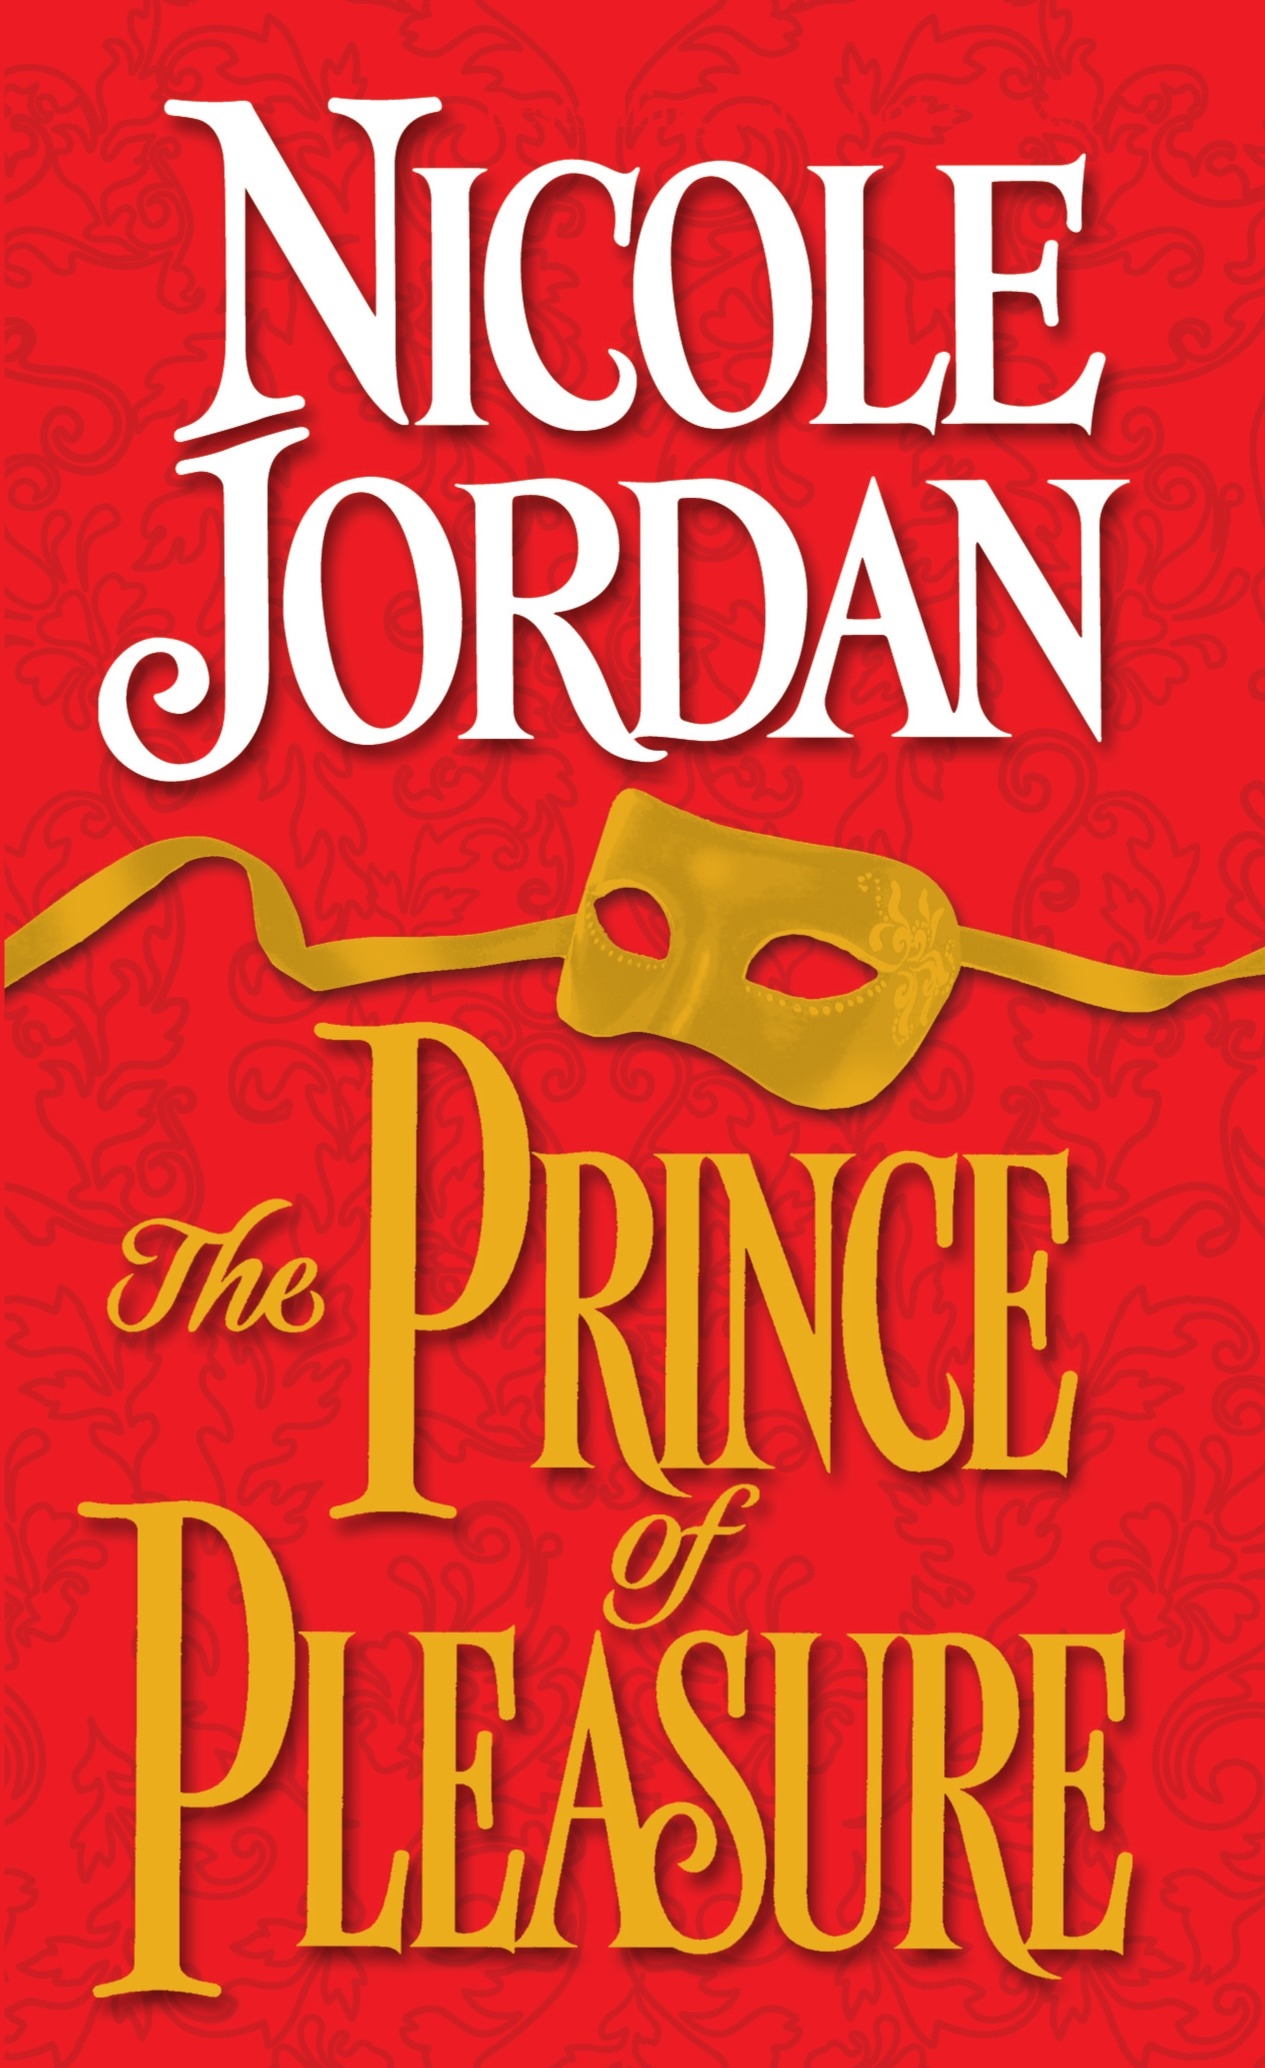 Черный принц читать. Jordan Nicole. Принц удовольствий.